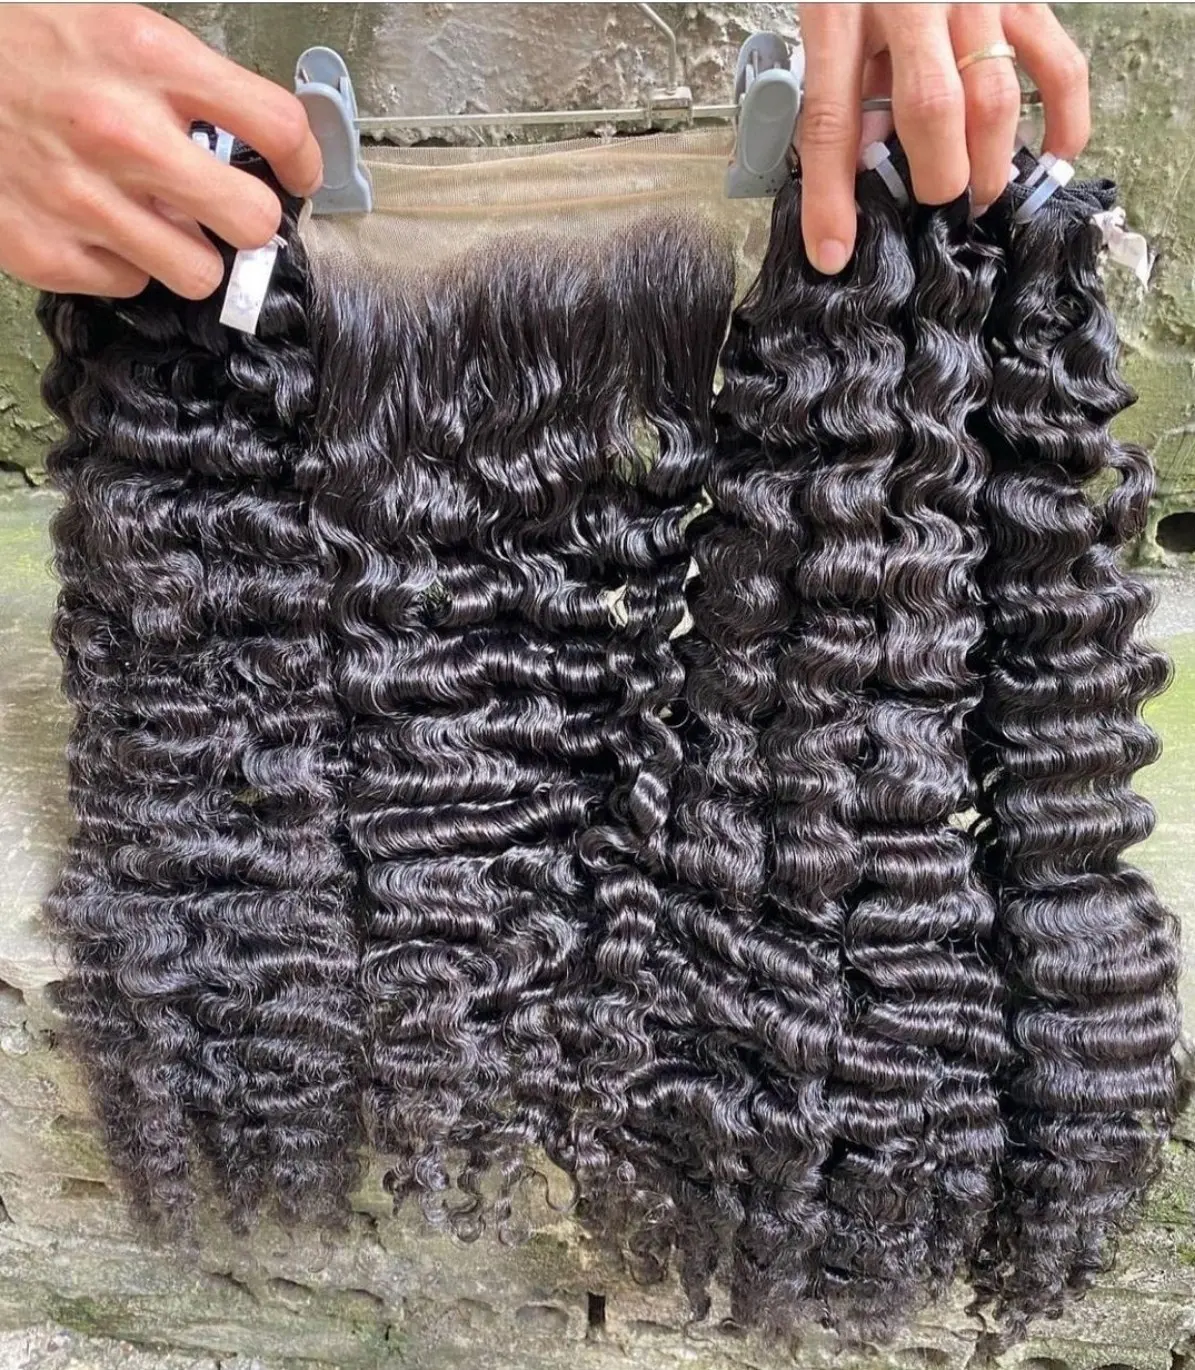 La migliore vendita di capelli umani ricci birmani grezzi, vendita all'ingrosso birmano riccia vera cuticola si adatta alle estensioni naturali dei capelli umani 8-30 pollici